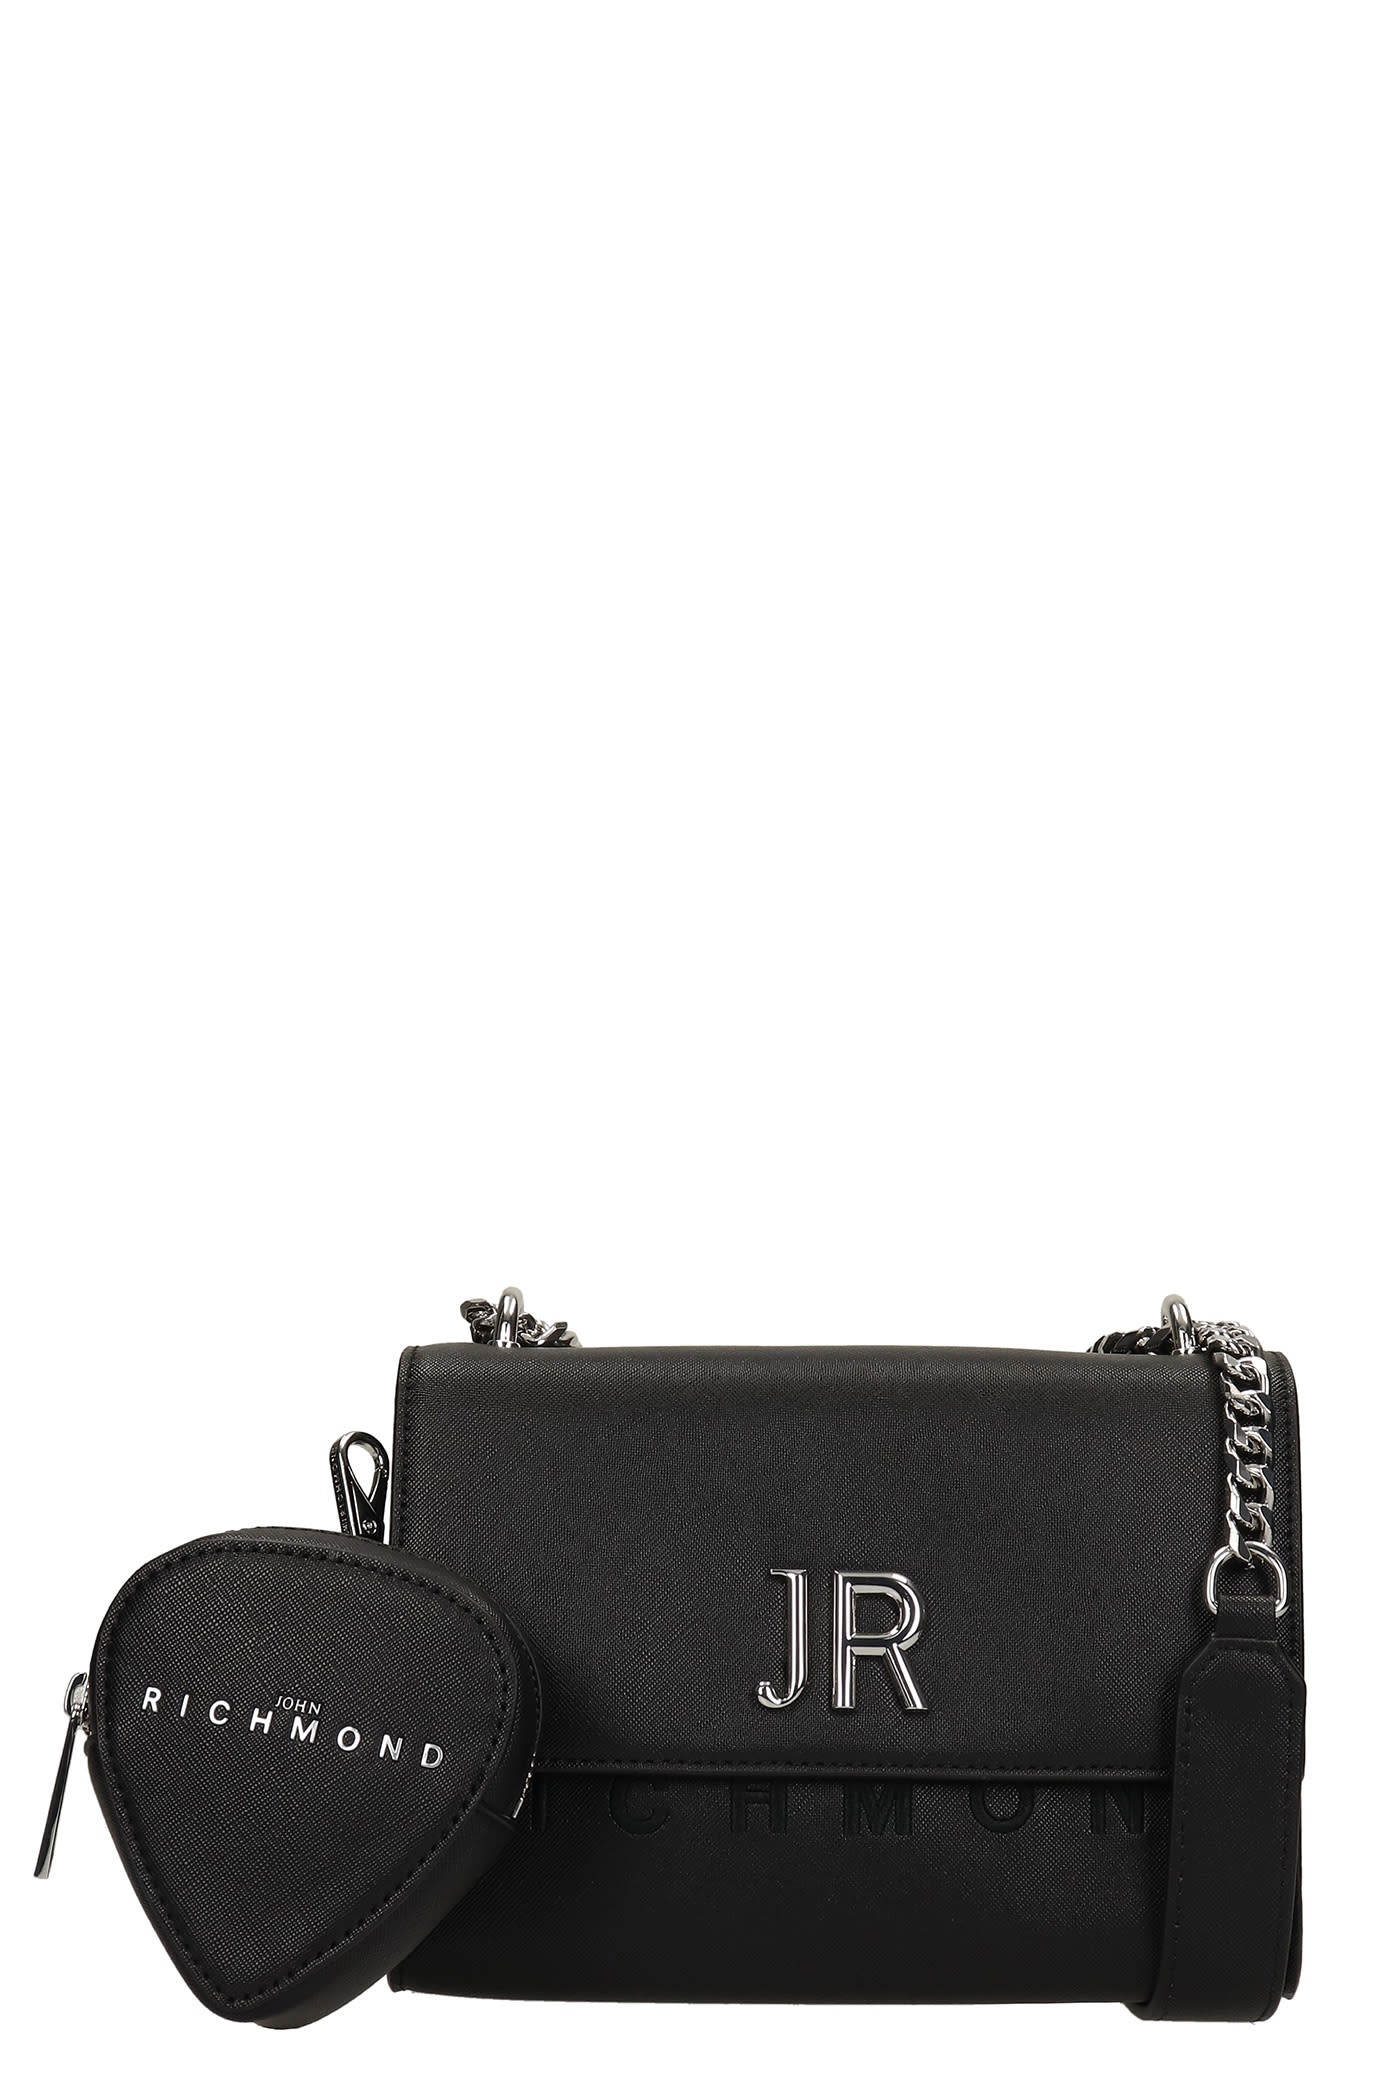 John Richmond Pellit Shoulder Bag In Black Leather